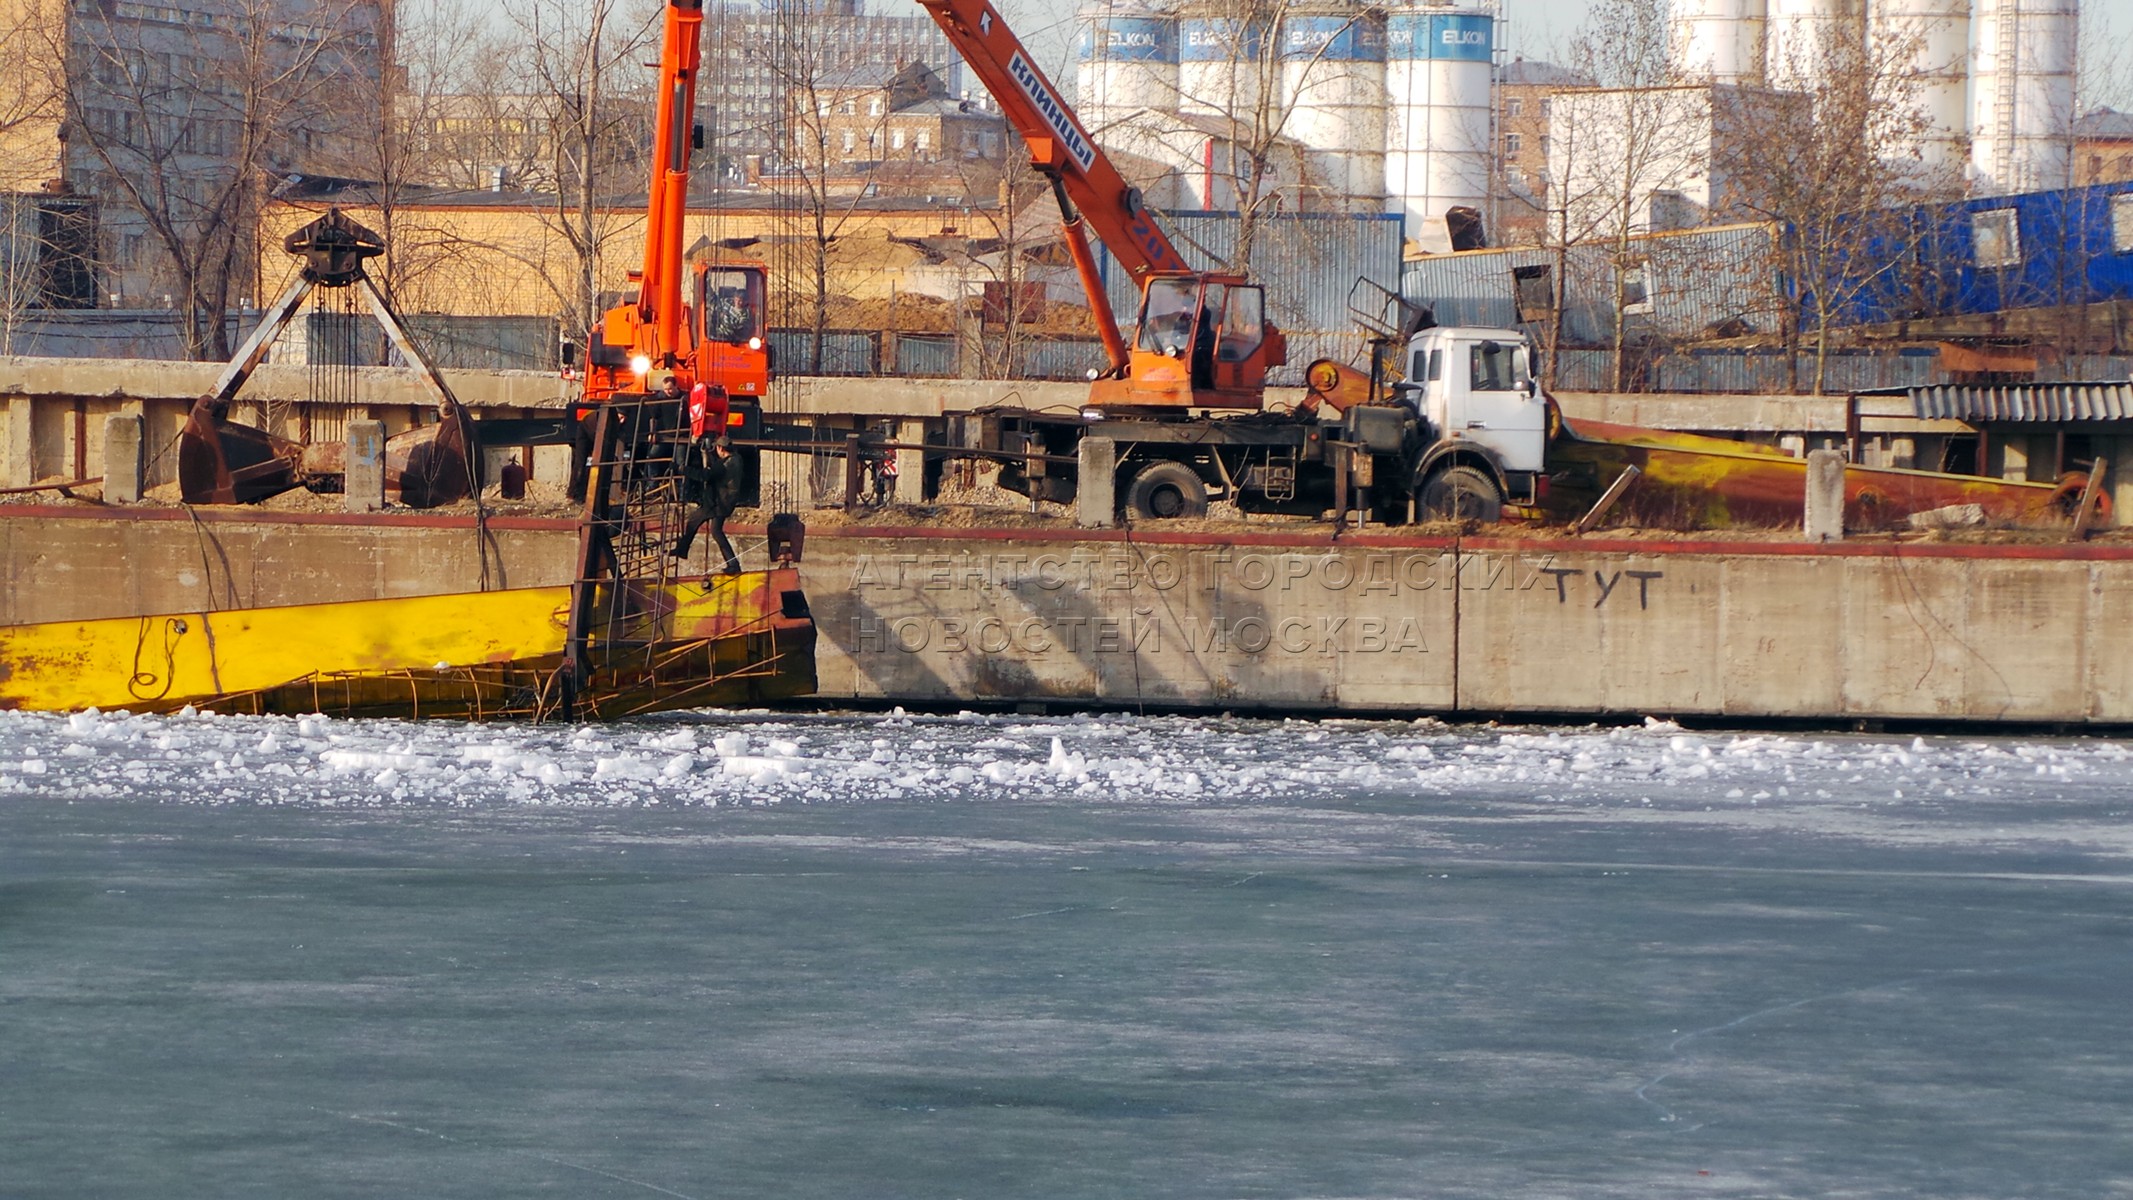 Краны падают в воду. Рабочие завода ЗИЛ. Застой воды на портовой площадке.